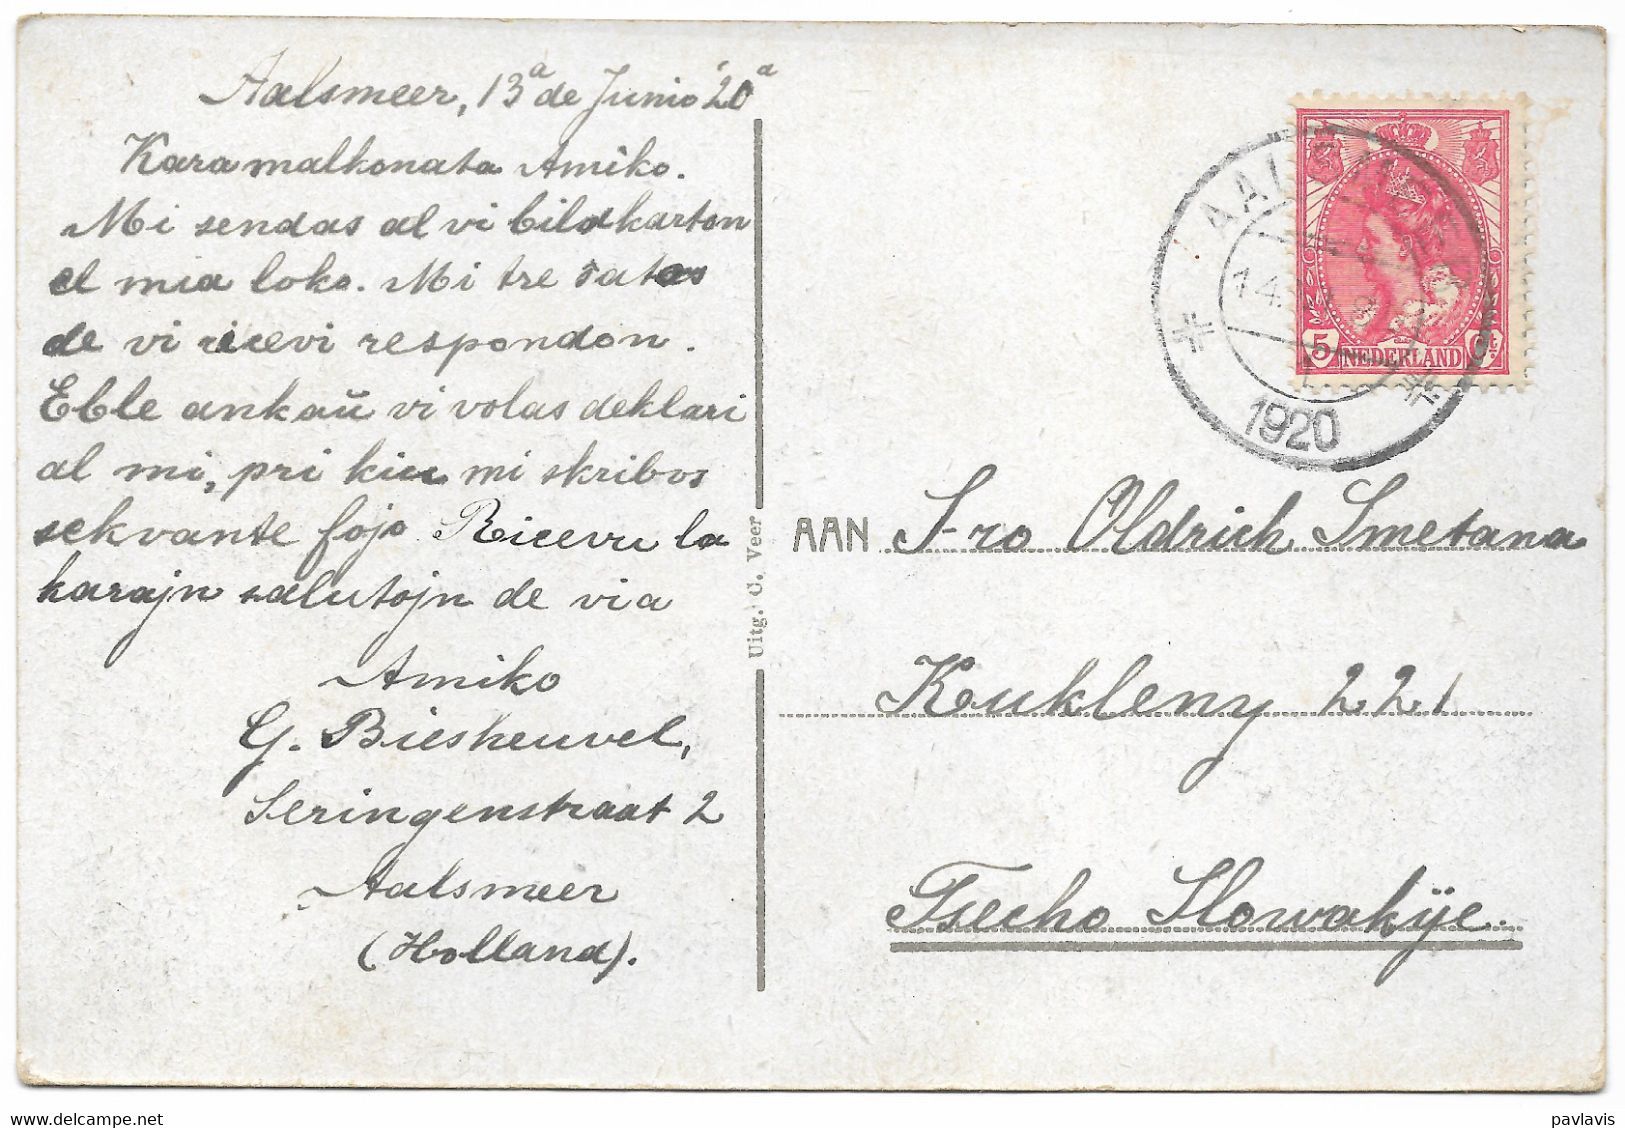 Netherlands – Aalsmeer – Weteringplantsoen – Esperanto – A Stamp Nederland Red 5 Cent – Year 1920 - Aalsmeer